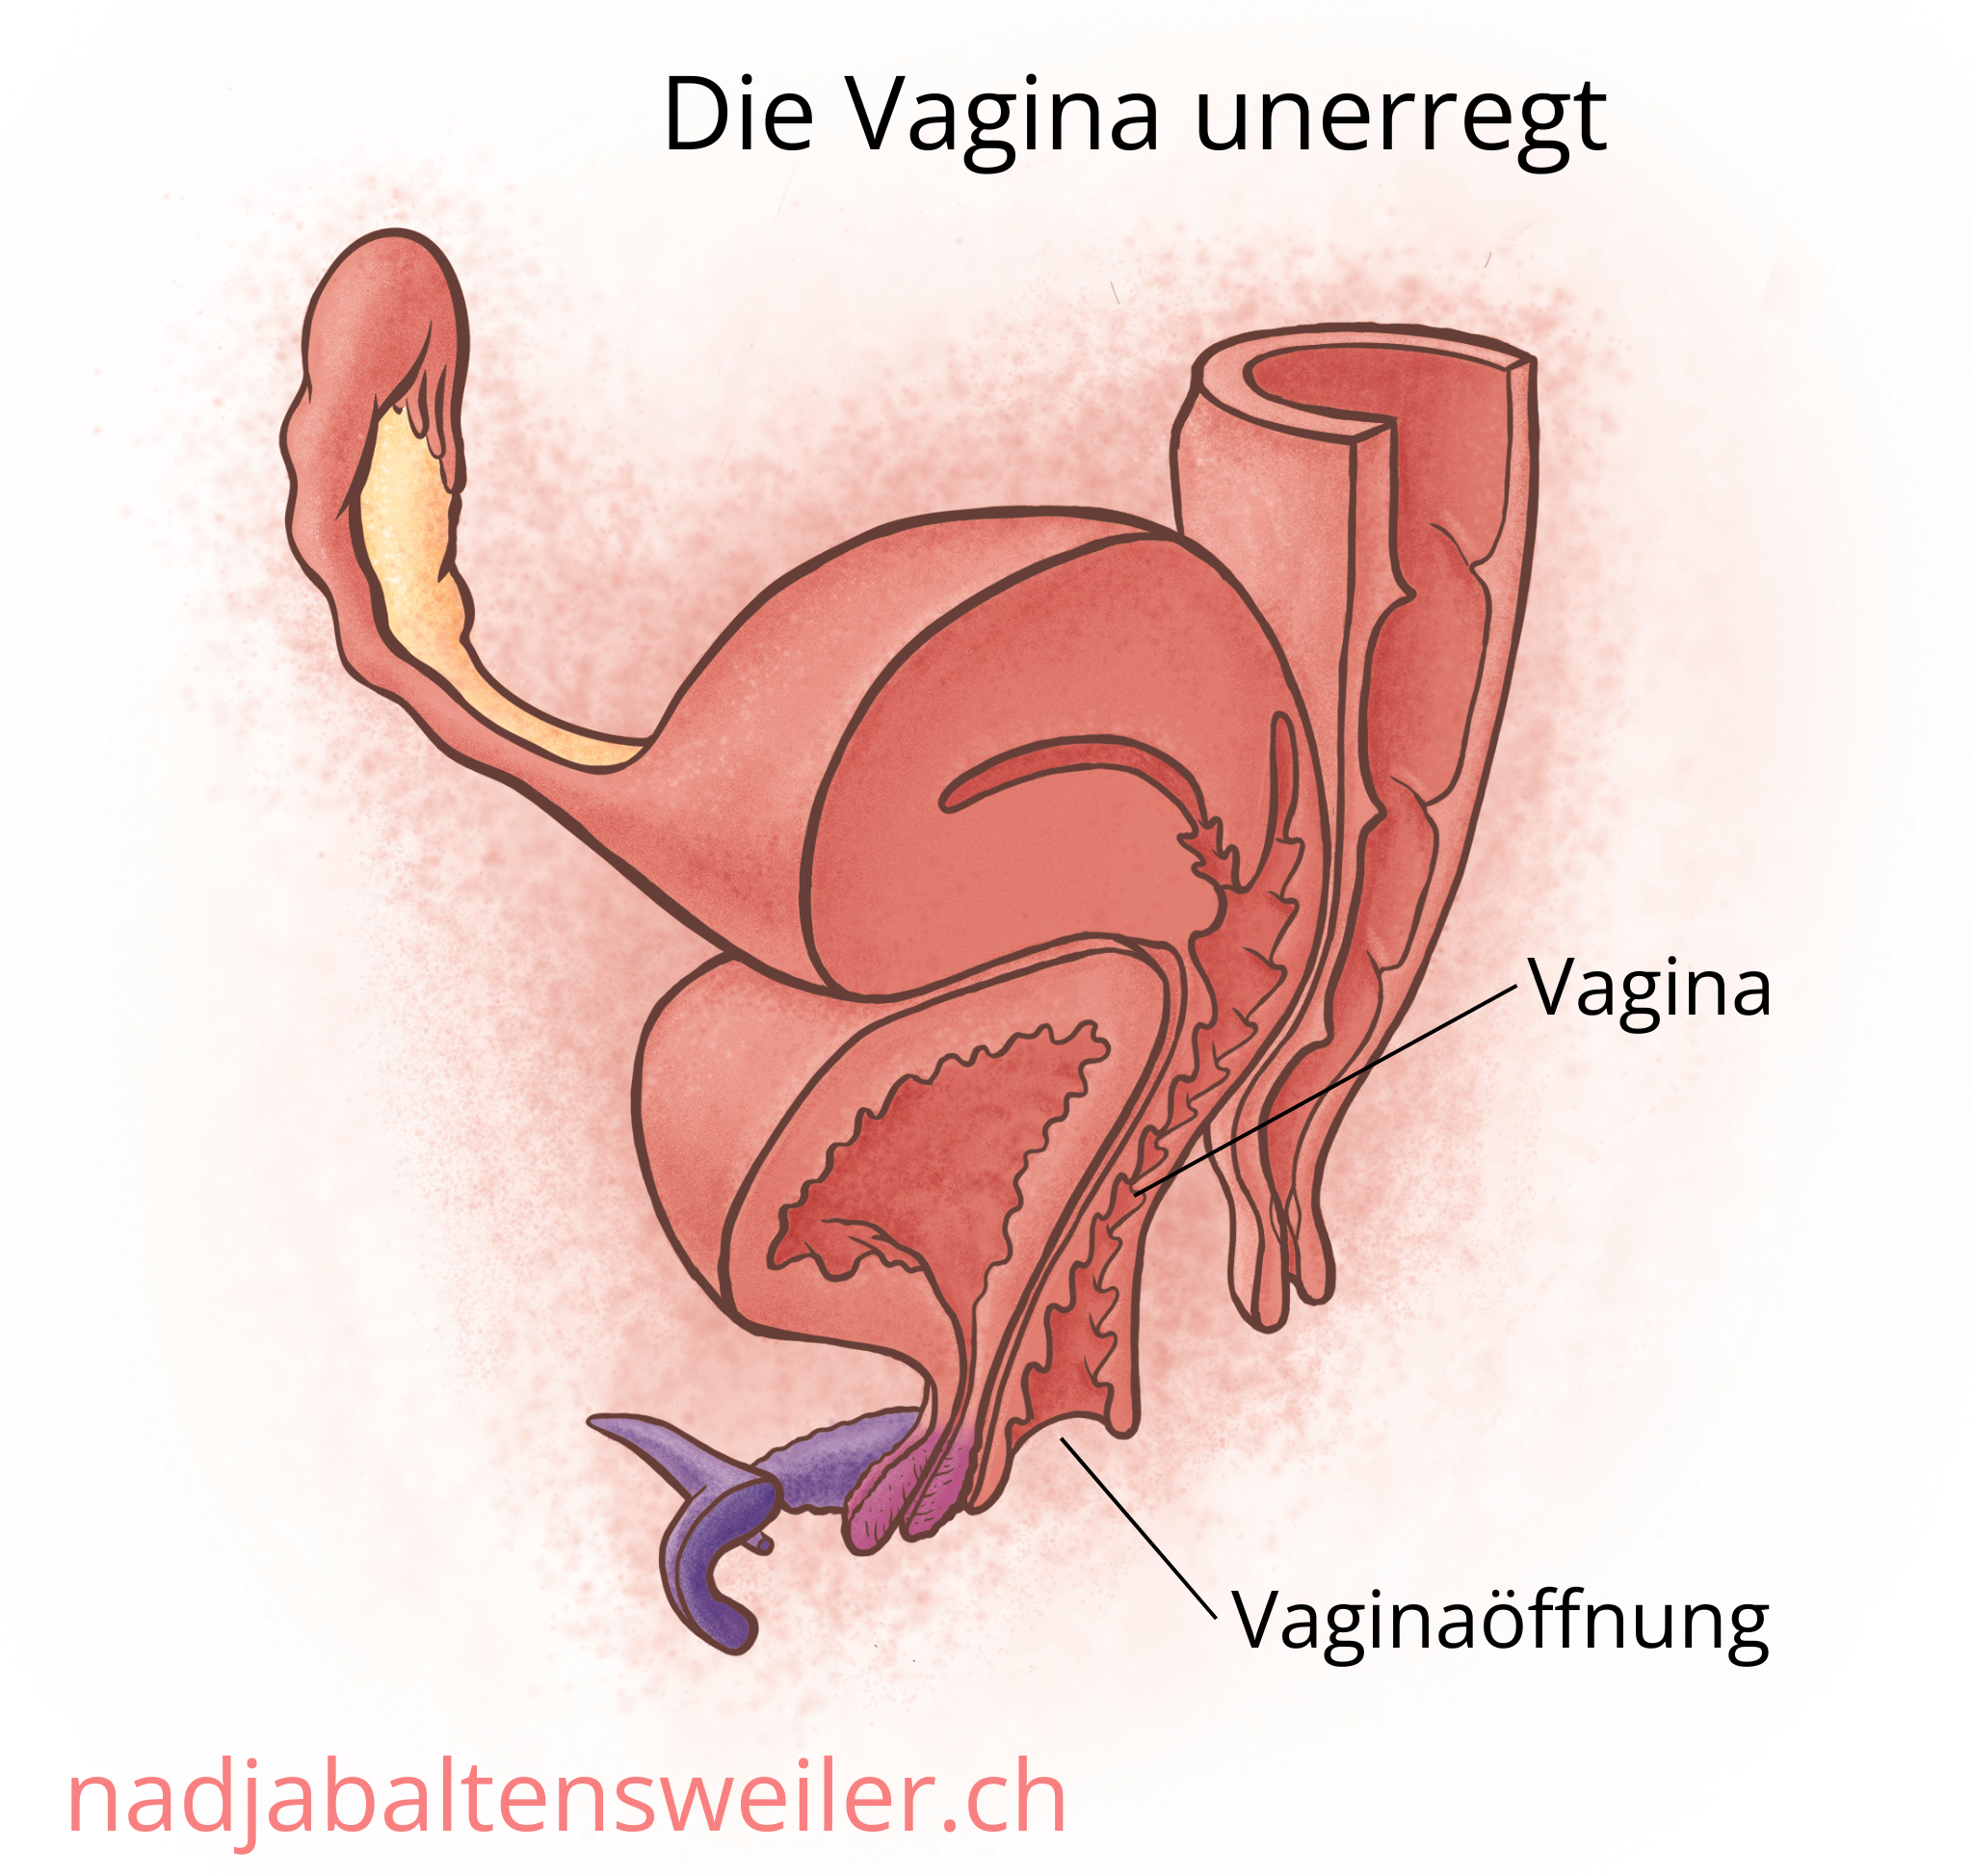 Das Bild zeigt einen Längsschnitt durch Geschlechtsorgane  im Ruhezustand. Die Vaginawände liegen nah beieinander.